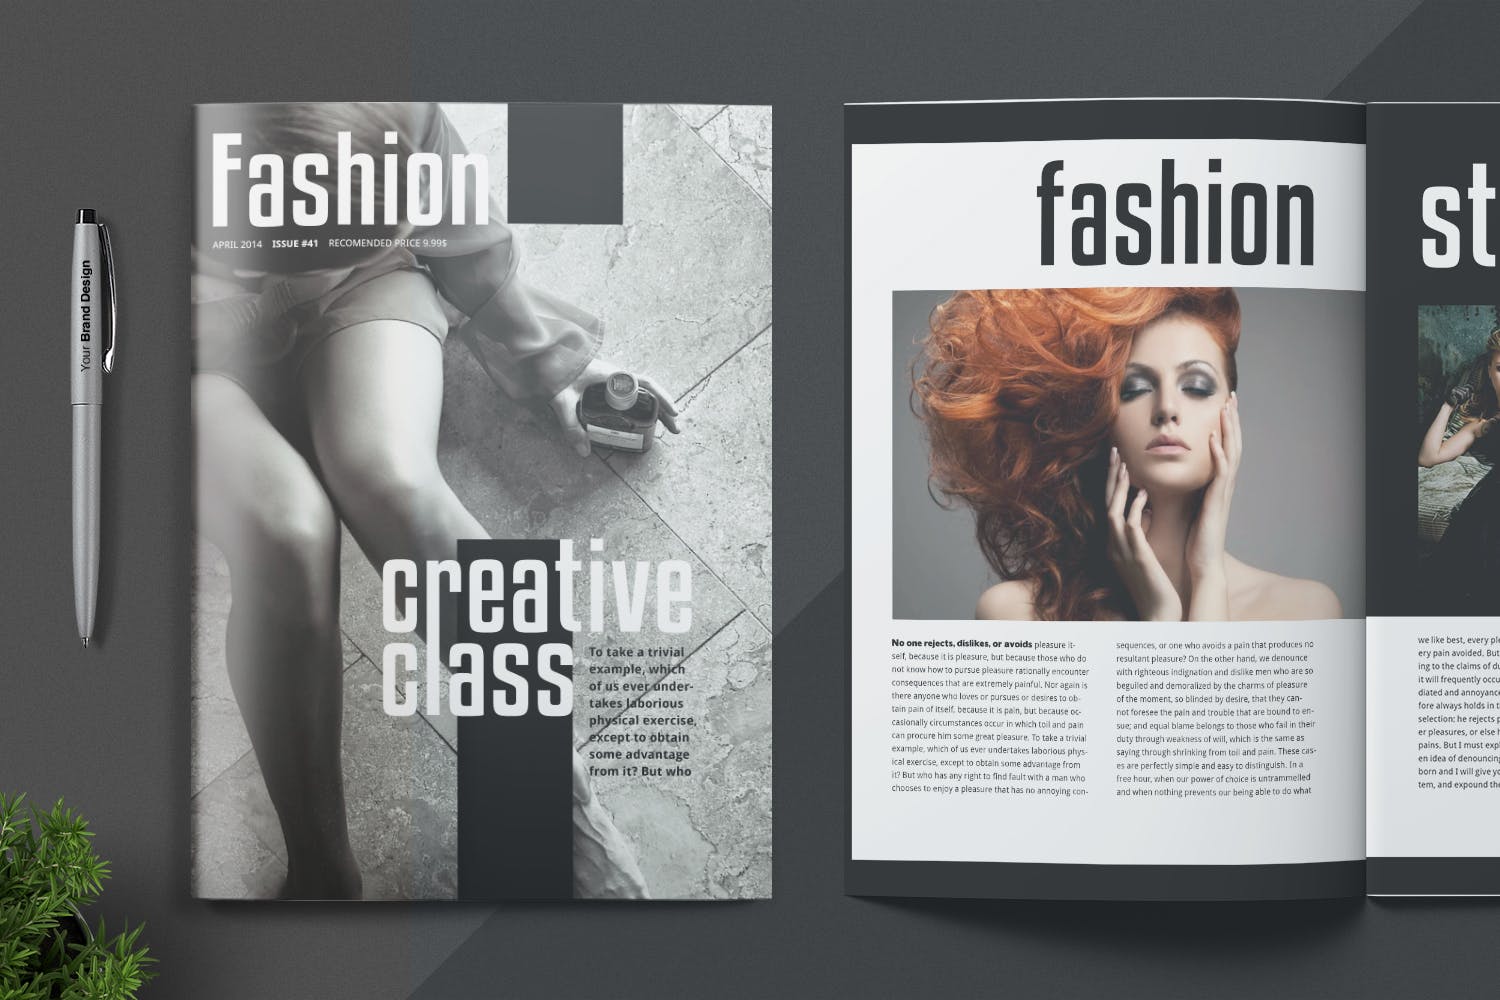 时尚/摄影/服装主题蚂蚁素材精选杂志设计INDD模板 Magazine Template插图